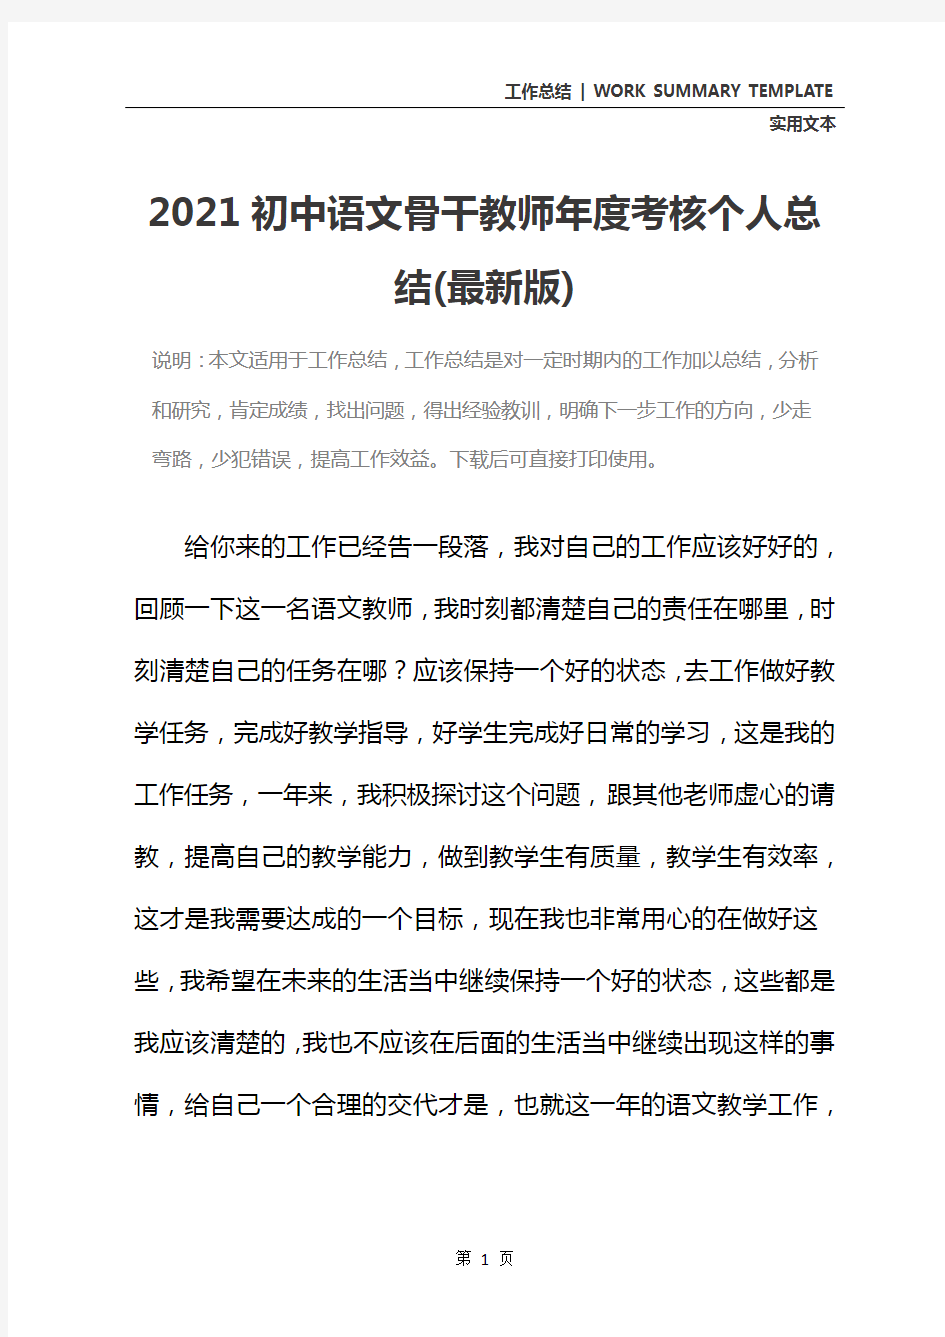 2021初中语文骨干教师年度考核个人总结(最新版)